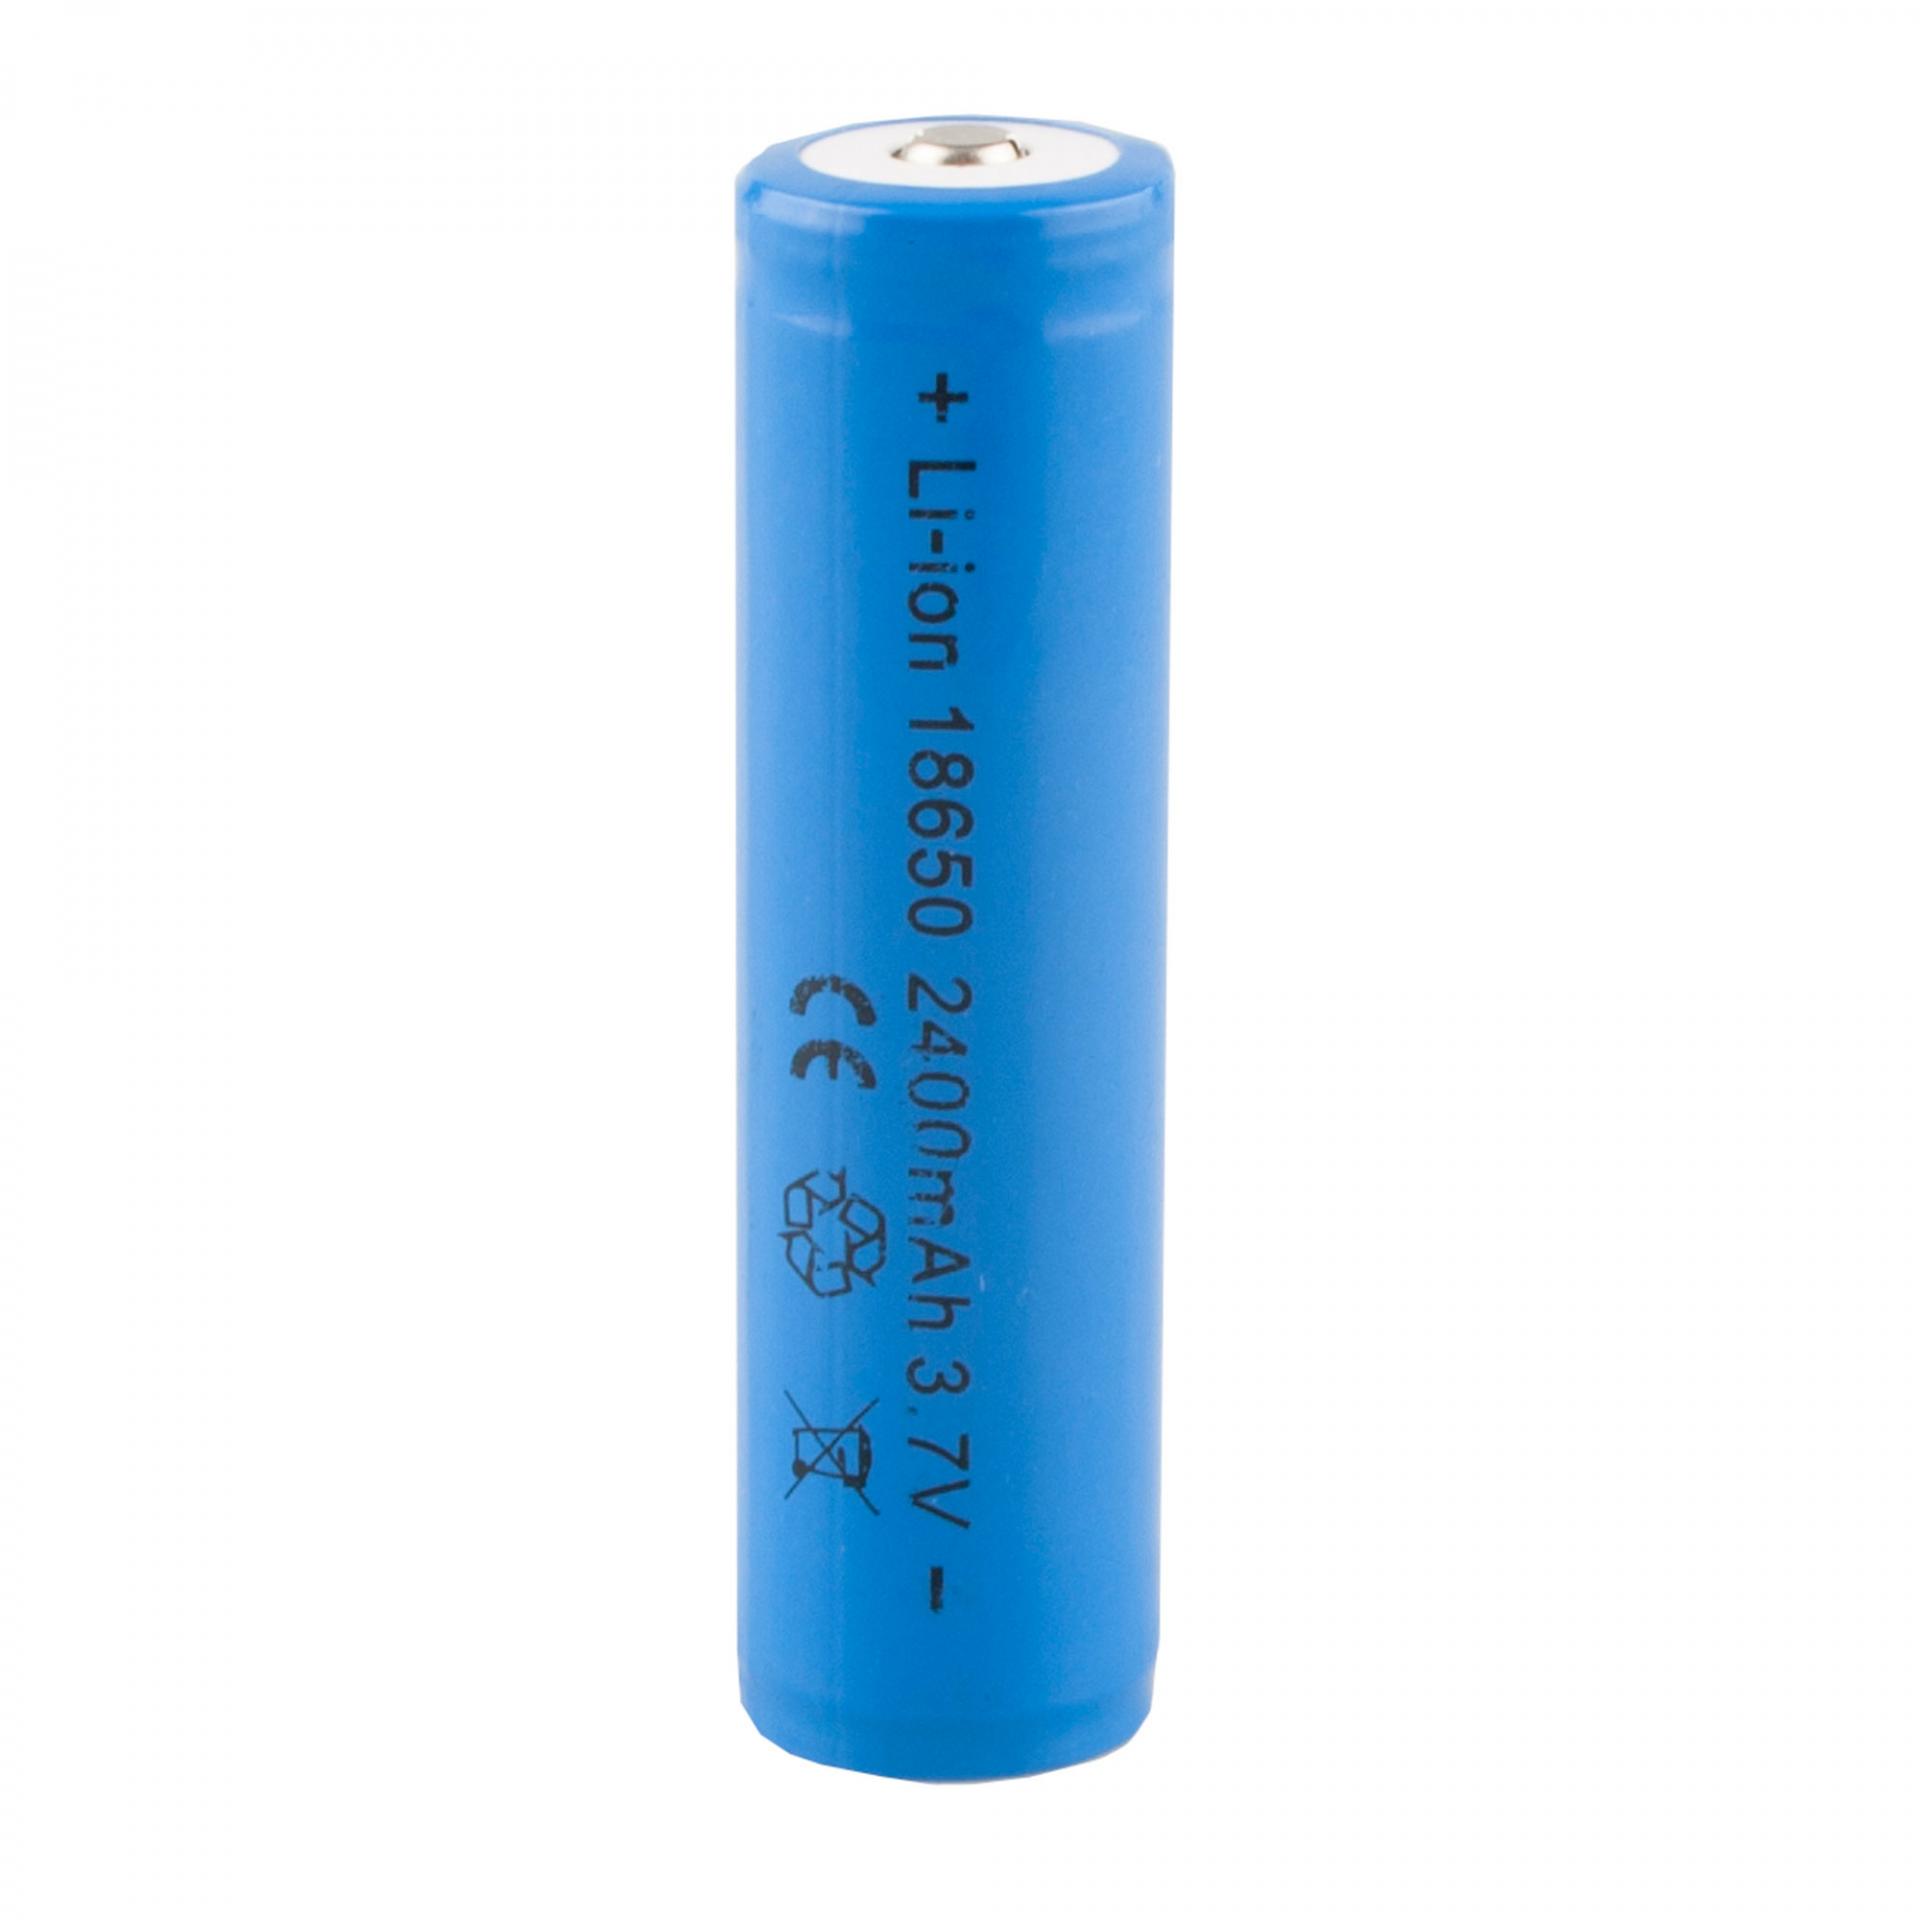 Bateria recargable 18650 Onlex